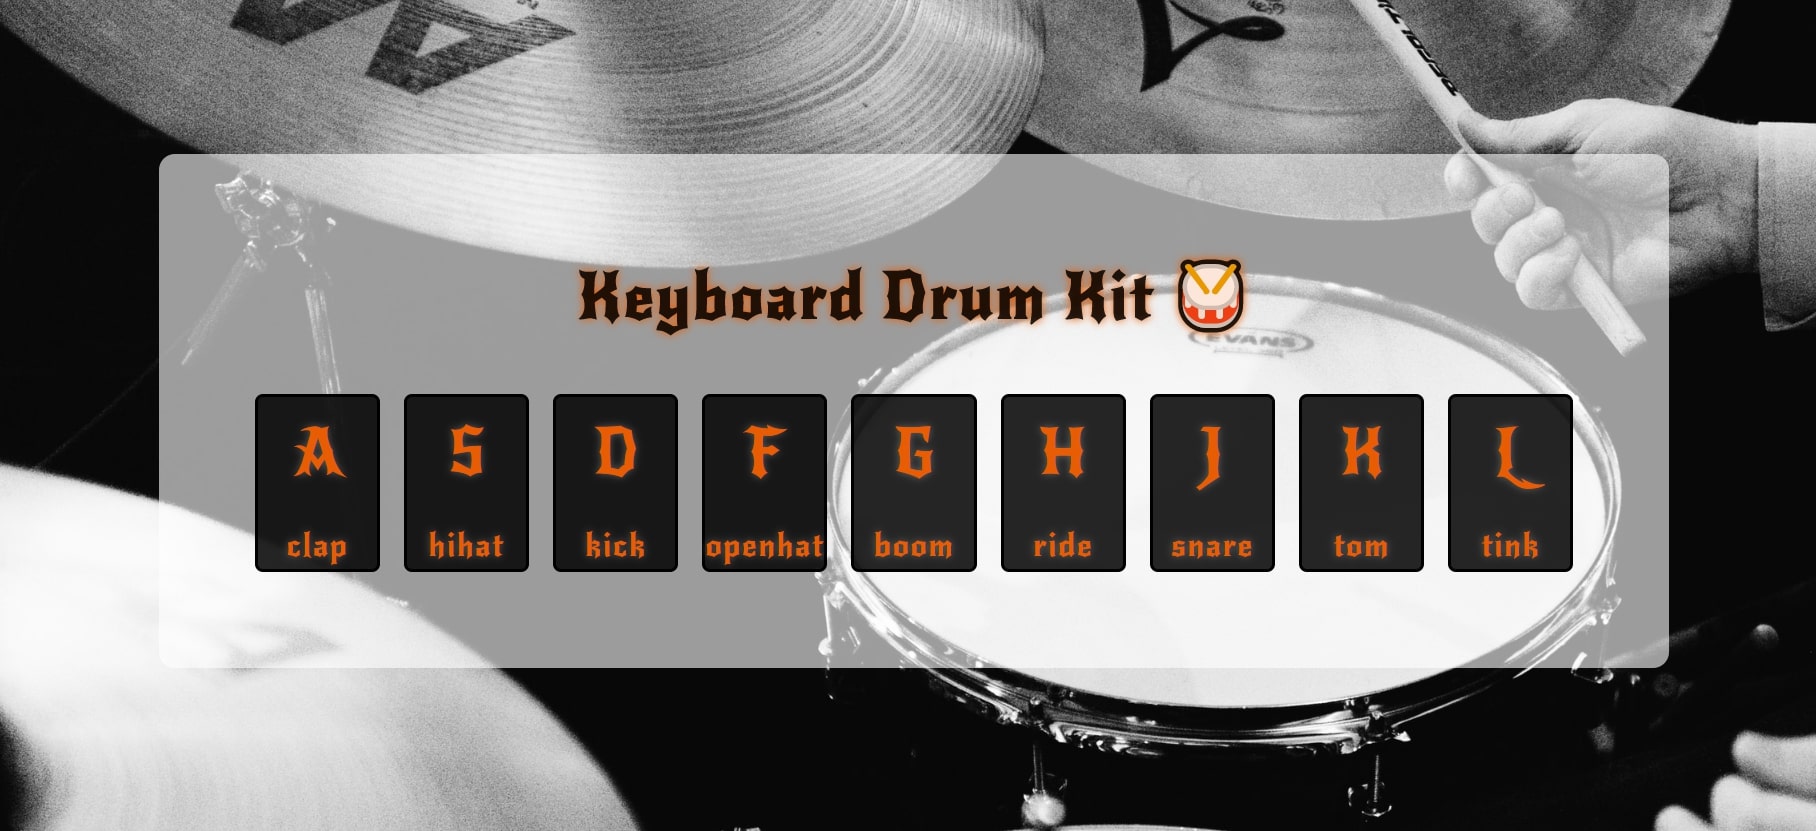 Keyboard drum kit